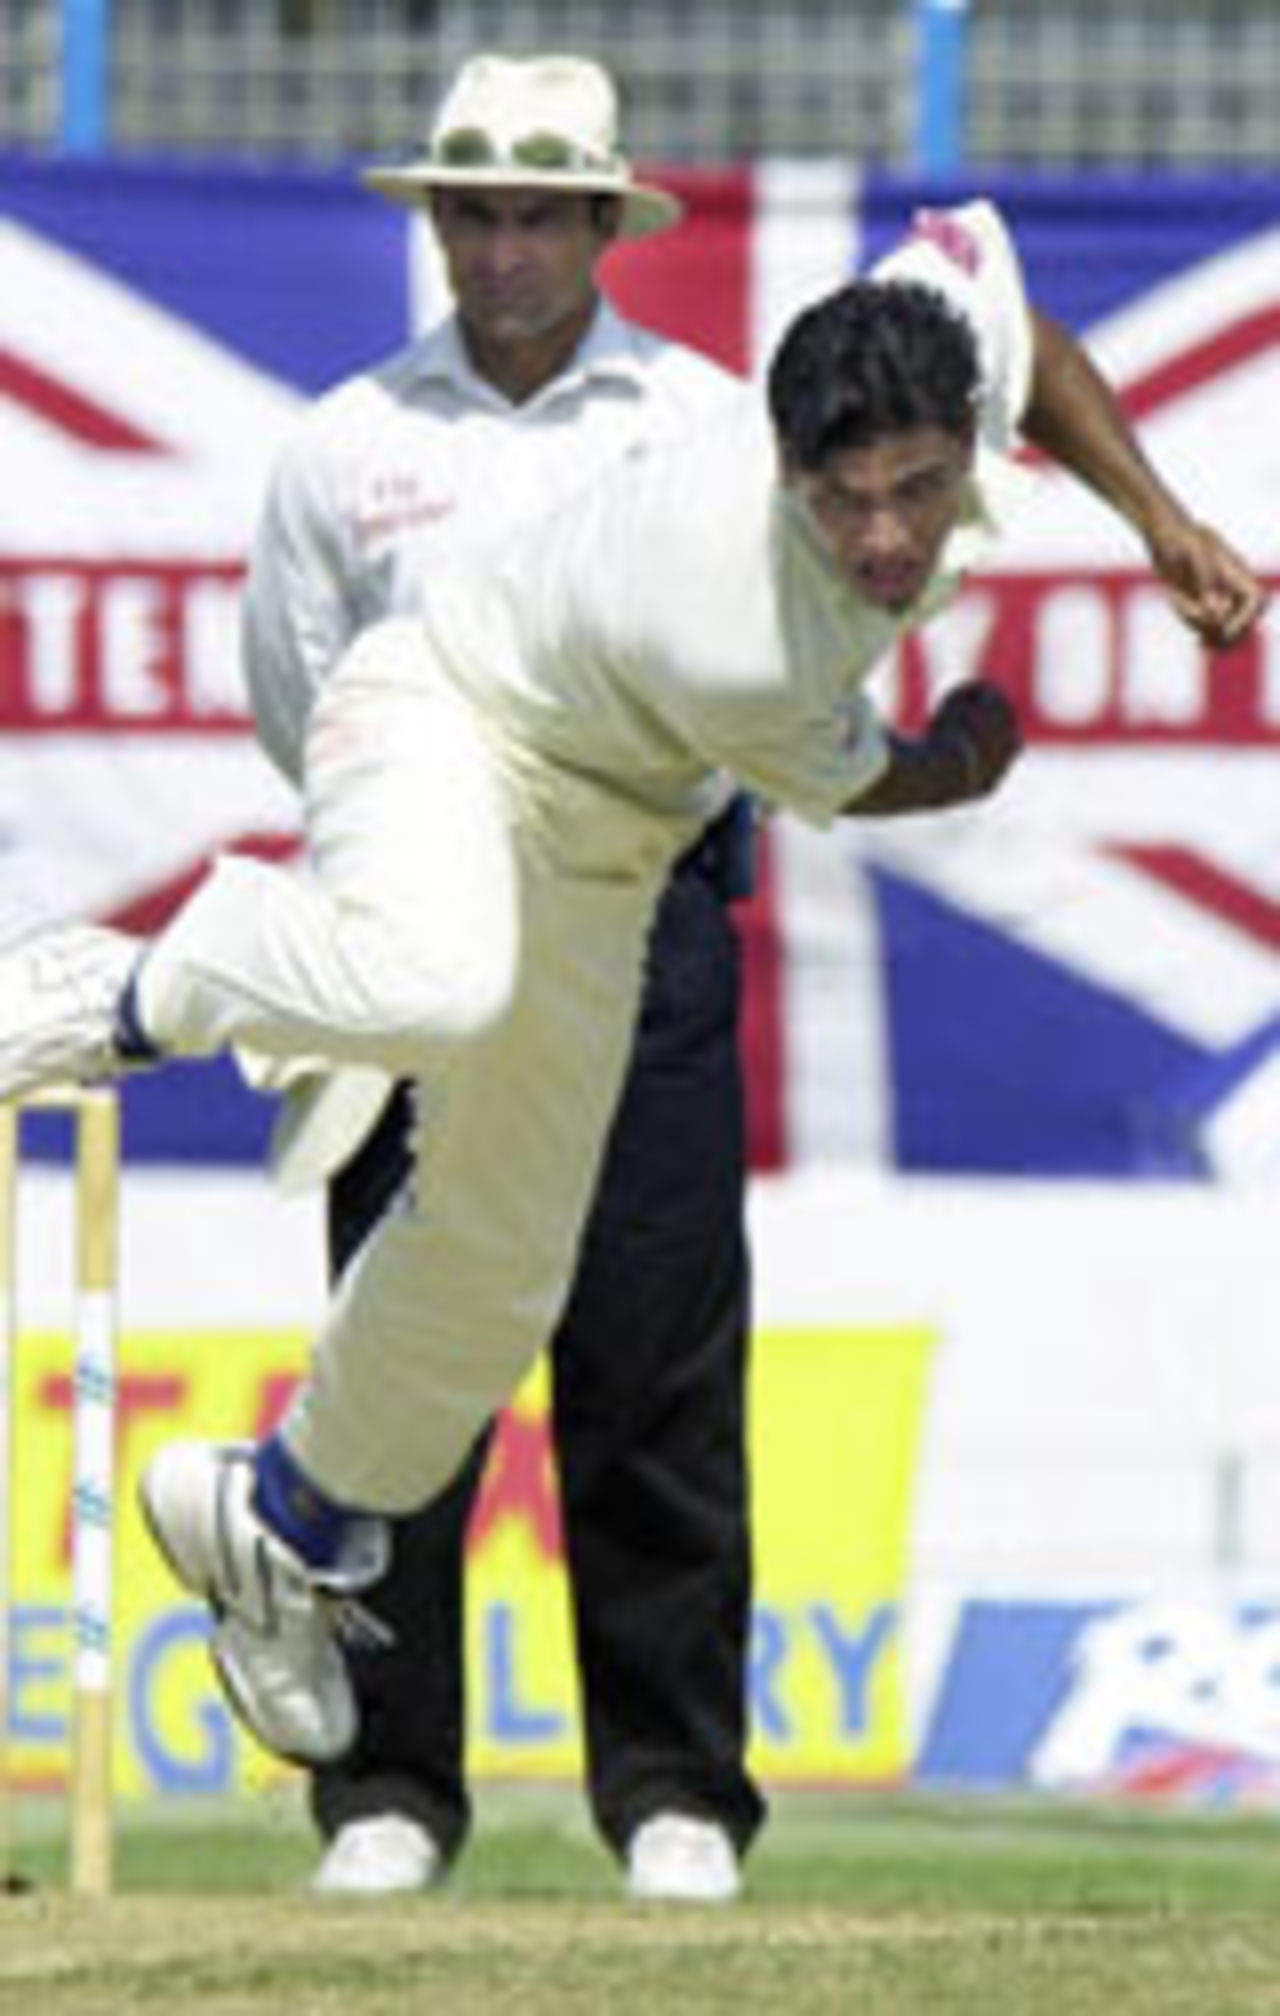 Mashrafe Mortaza bowling, Bangladesh v England, 2nd Test, Chittagong, October 29, 2003